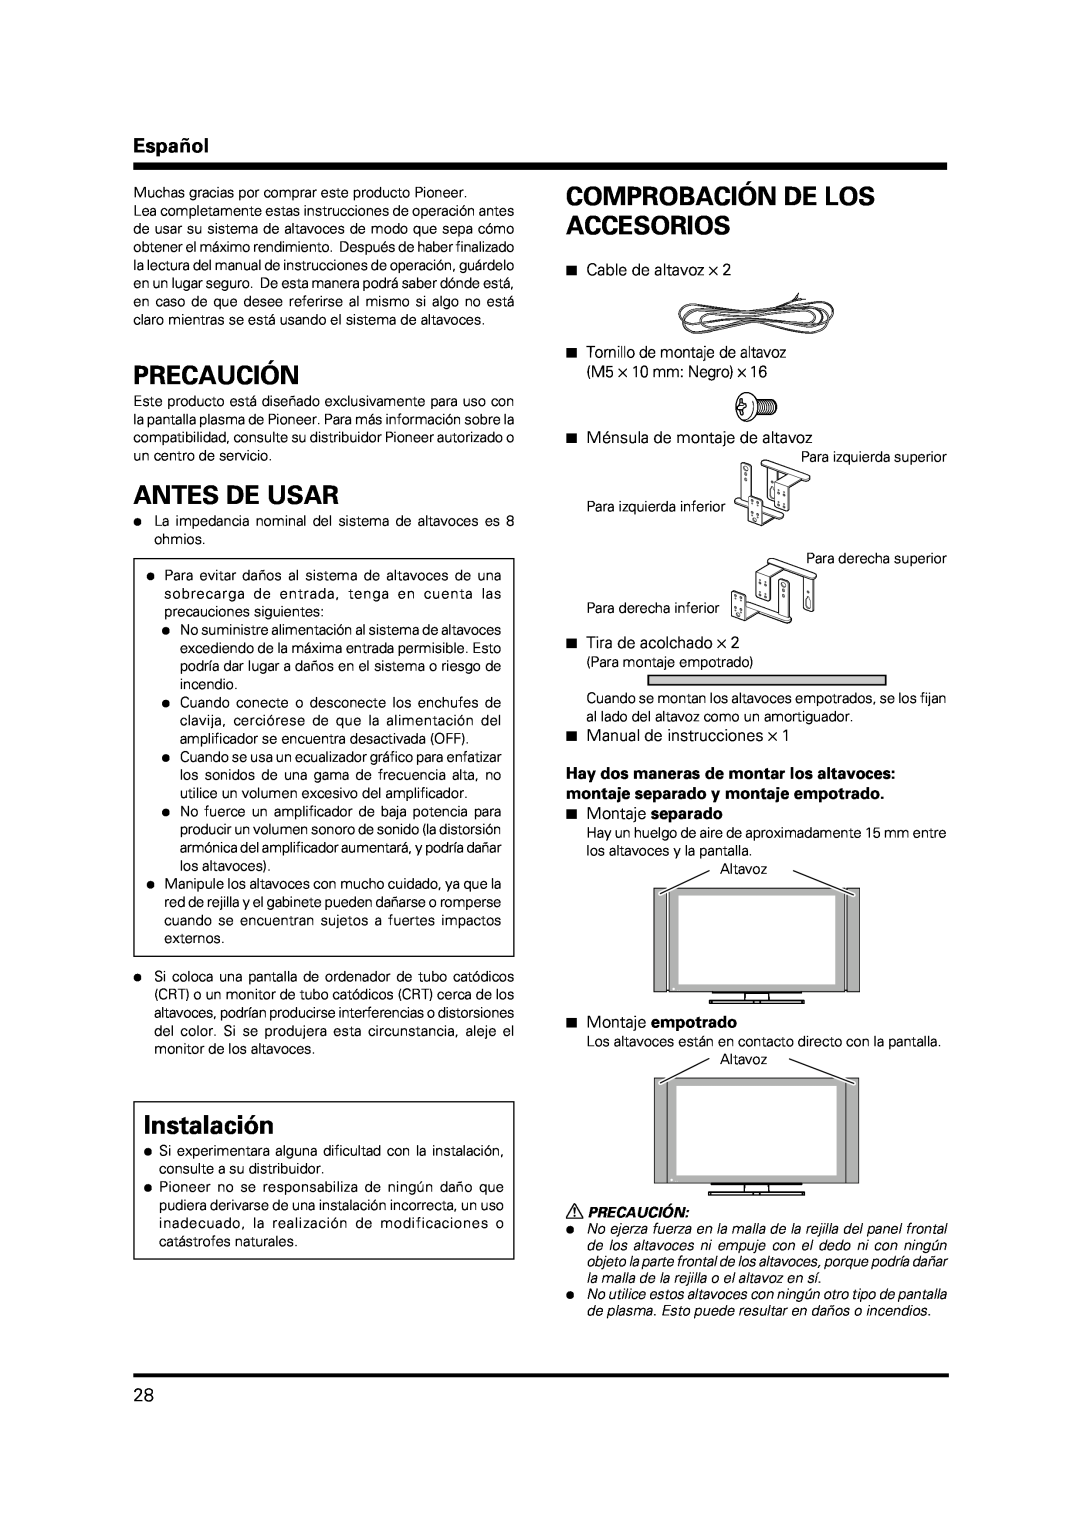 Pioneer PDP-S37 manual Precaución, Antes De Usar, Comprobación De Los Accesorios, Instalación, Español, 7Cable de altavoz ⋅ 